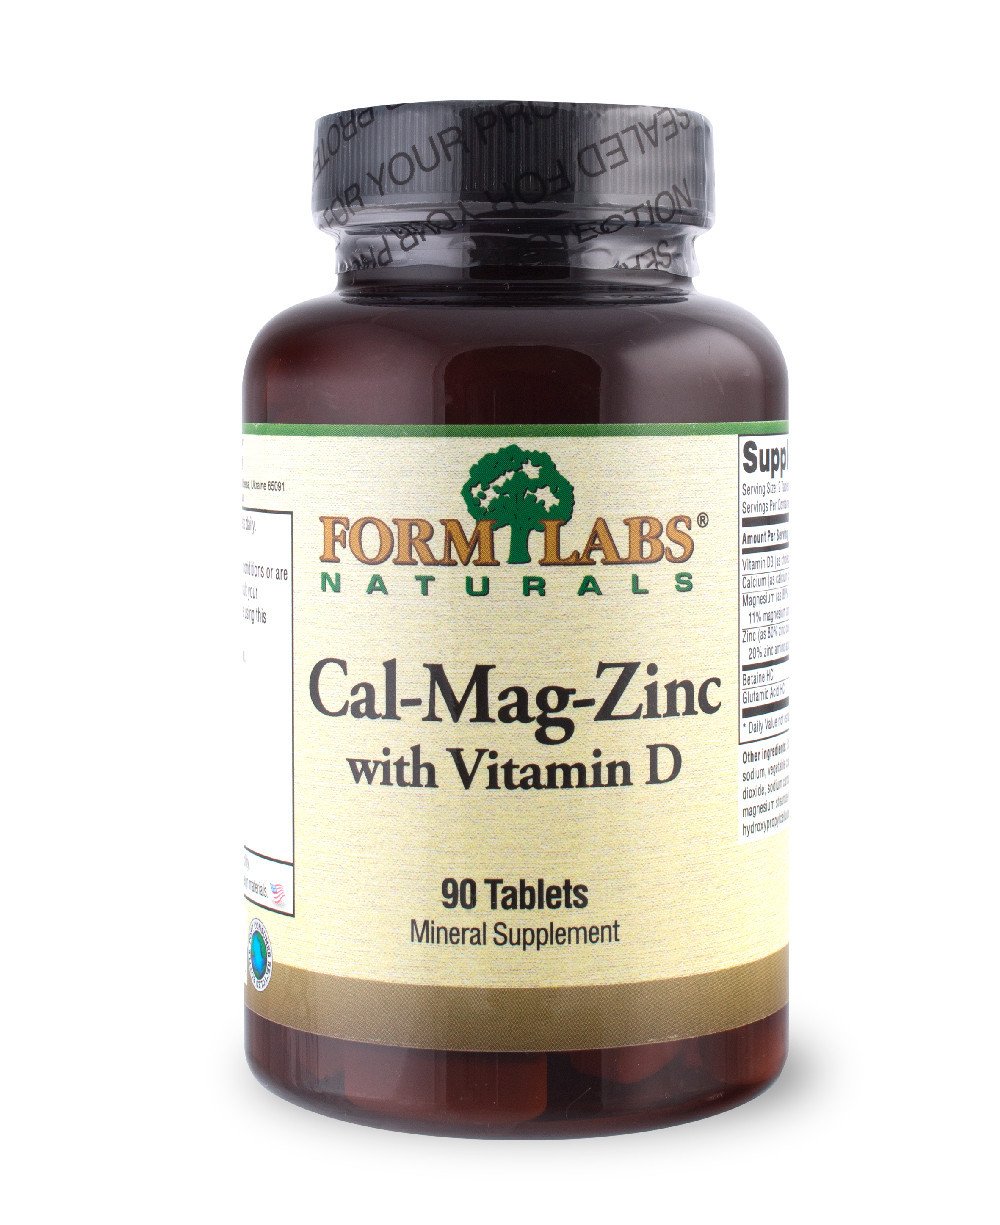 Cal-Mag-Zinc+Vitamin D, 180 мл, Form Labs Naturals. Витамины и минералы. Поддержание здоровья Укрепление иммунитета 